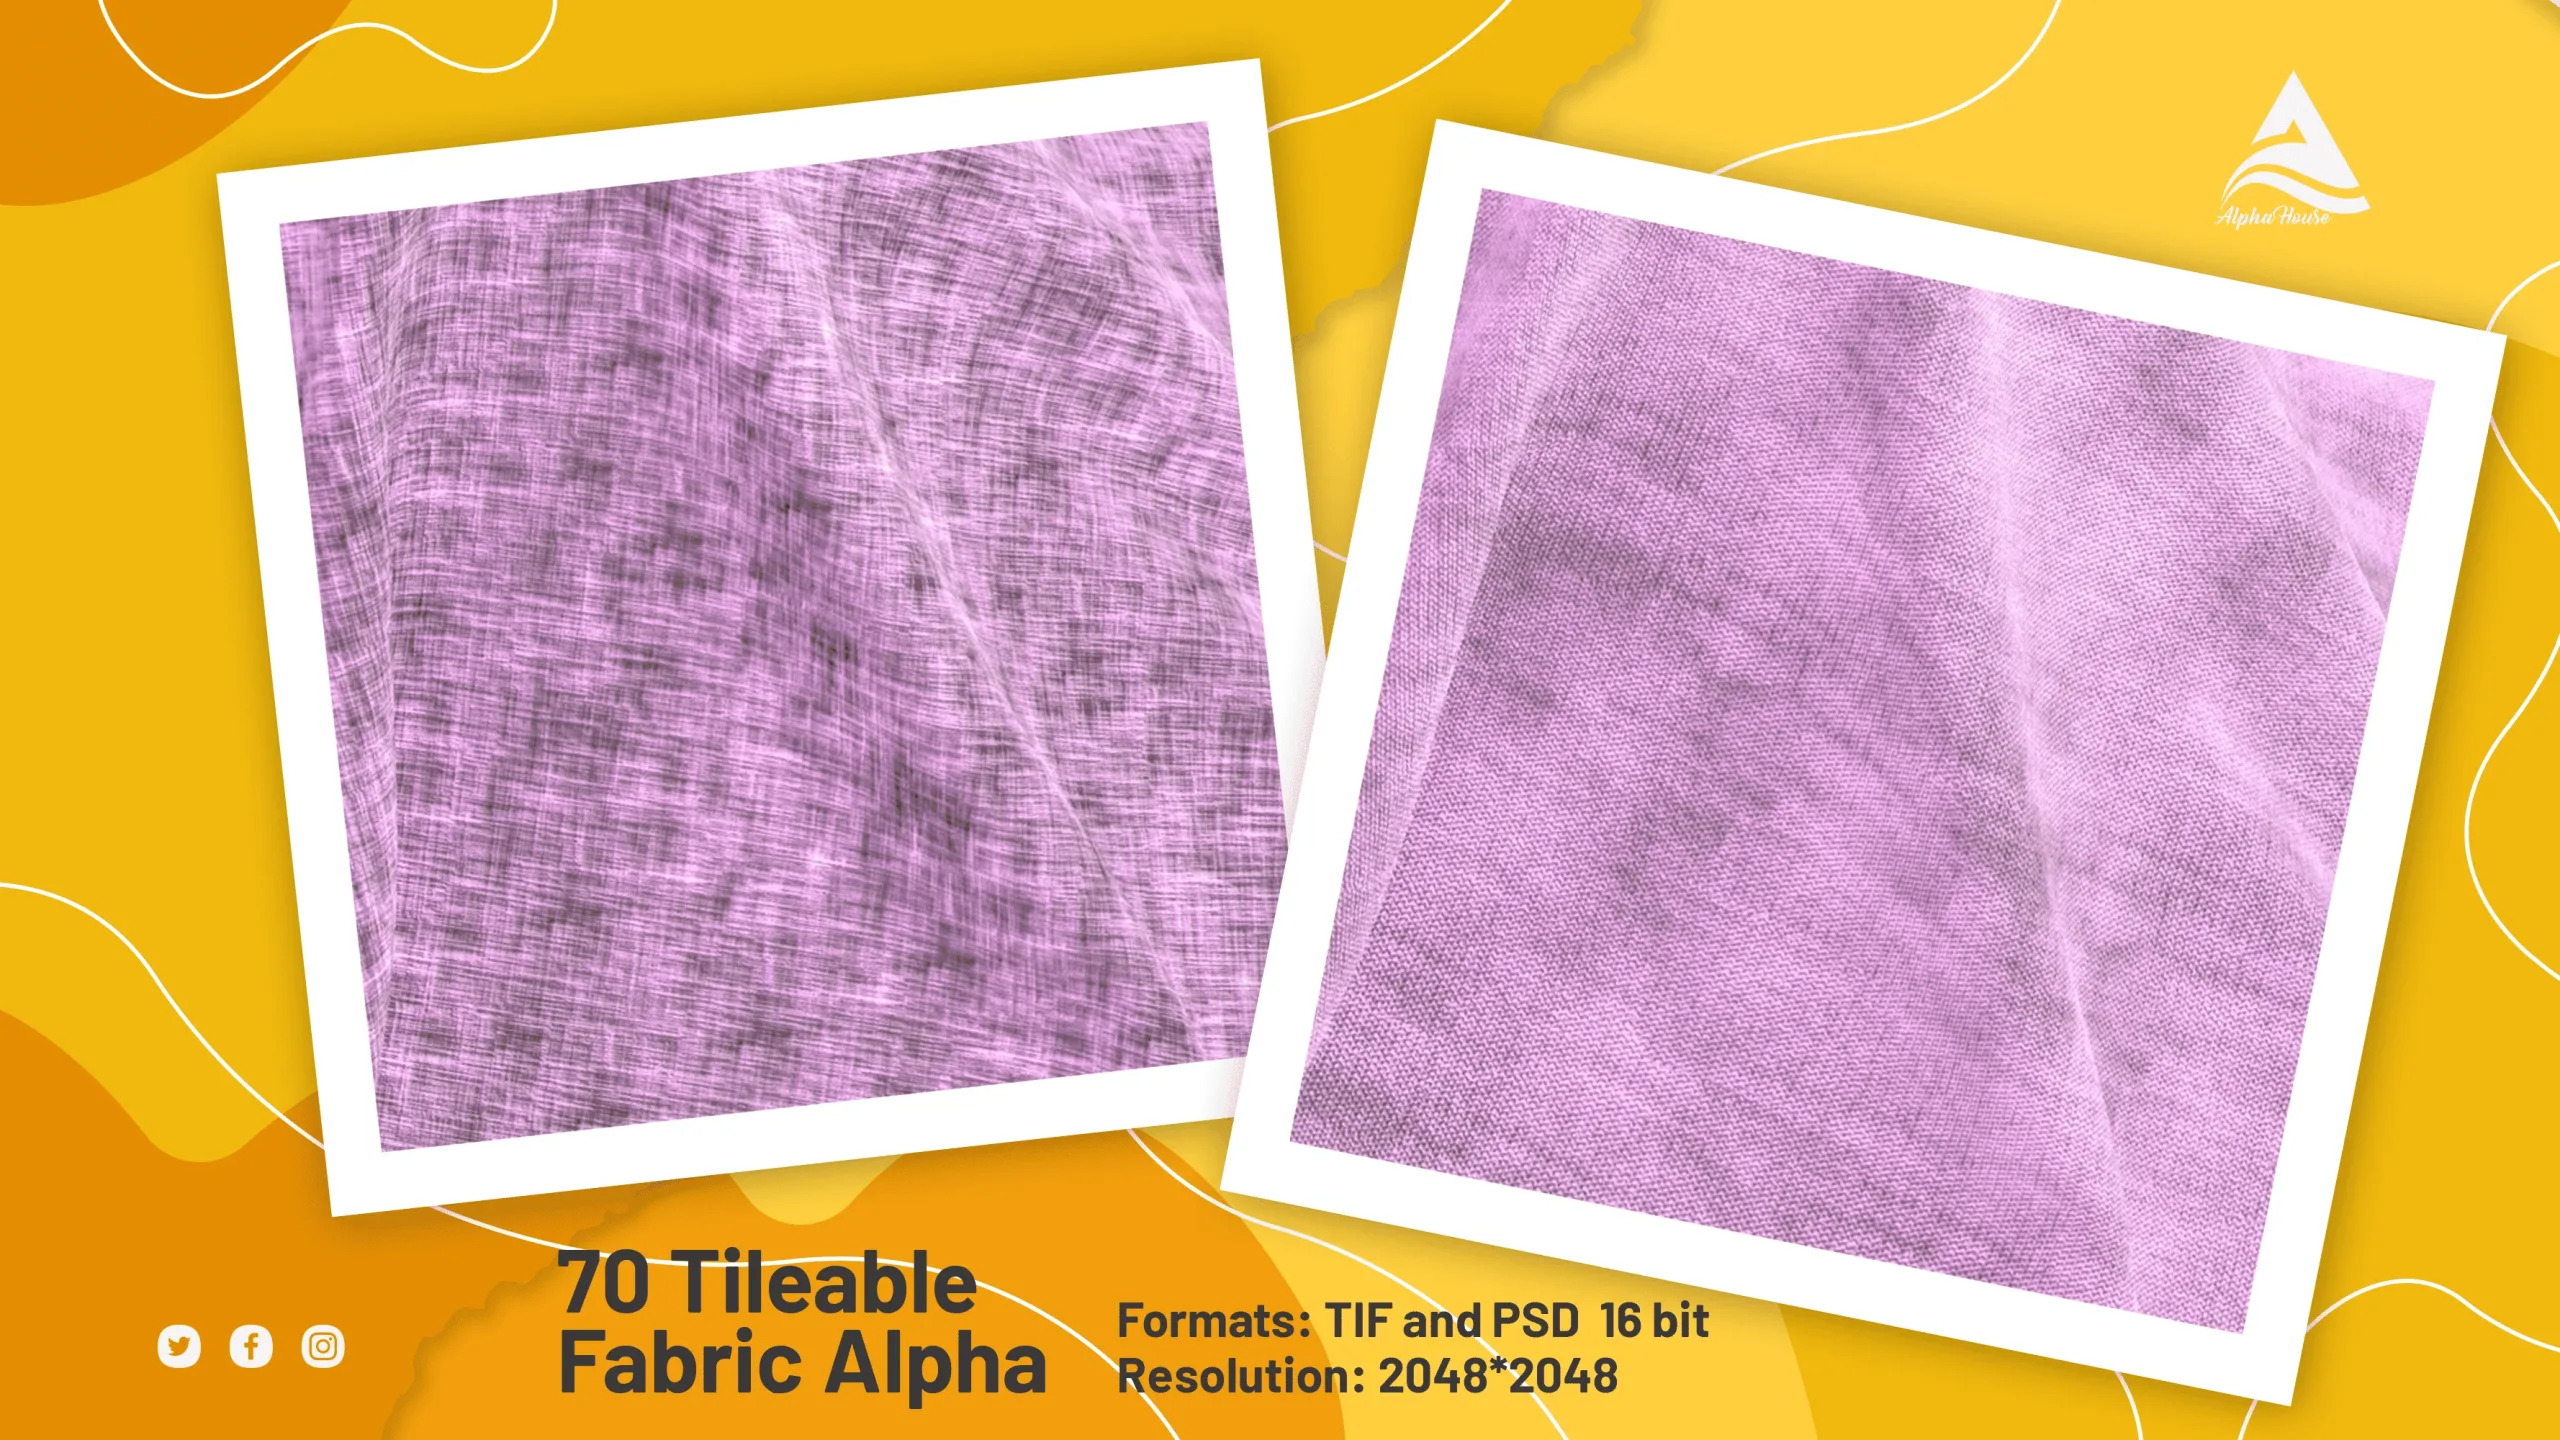 70 Tileable Fabric Alpha